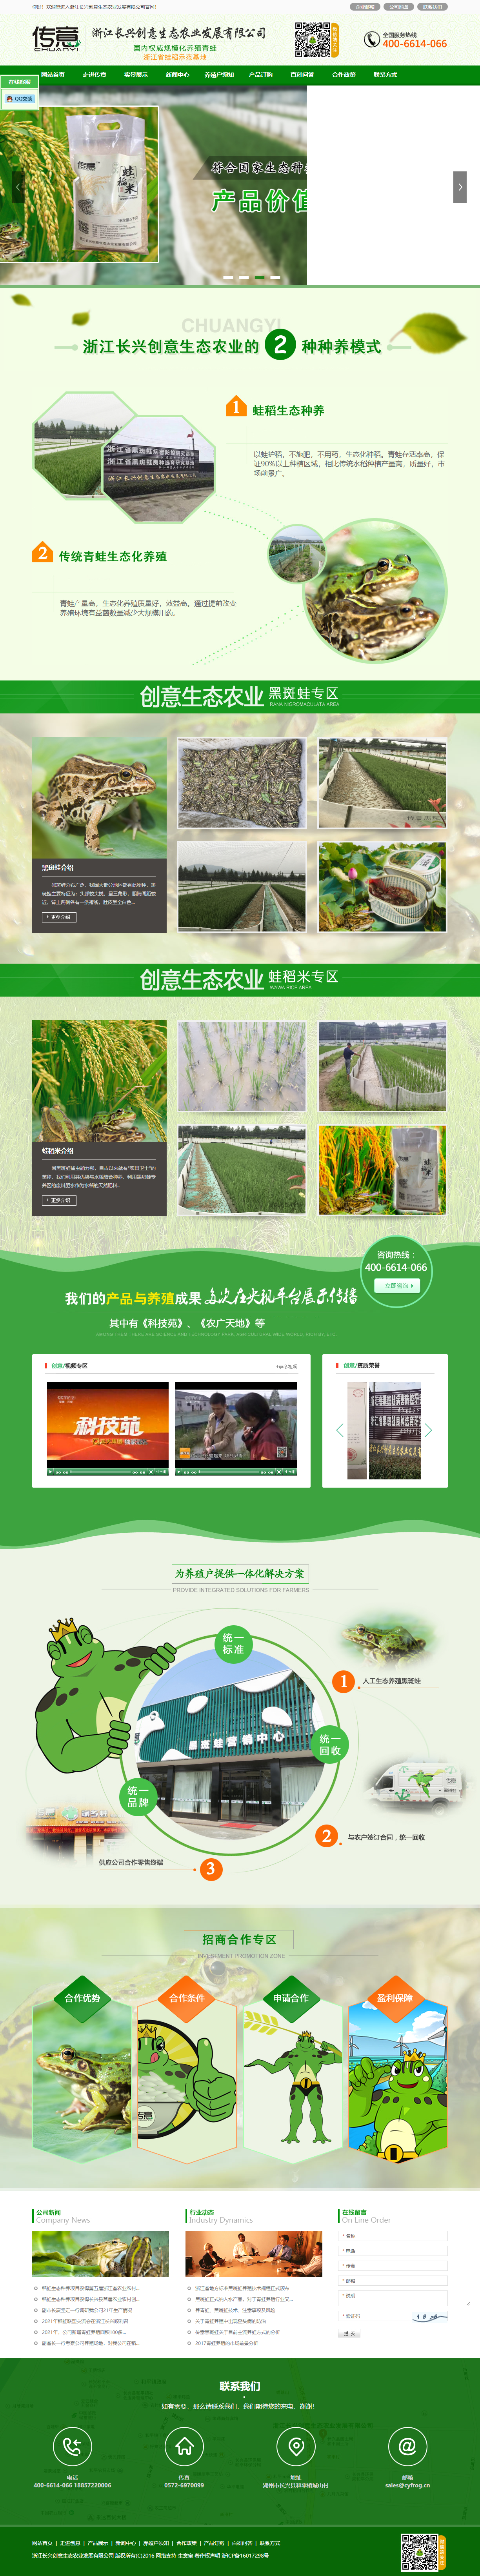 浙江长兴创意生态农业发展有限公司网站案例